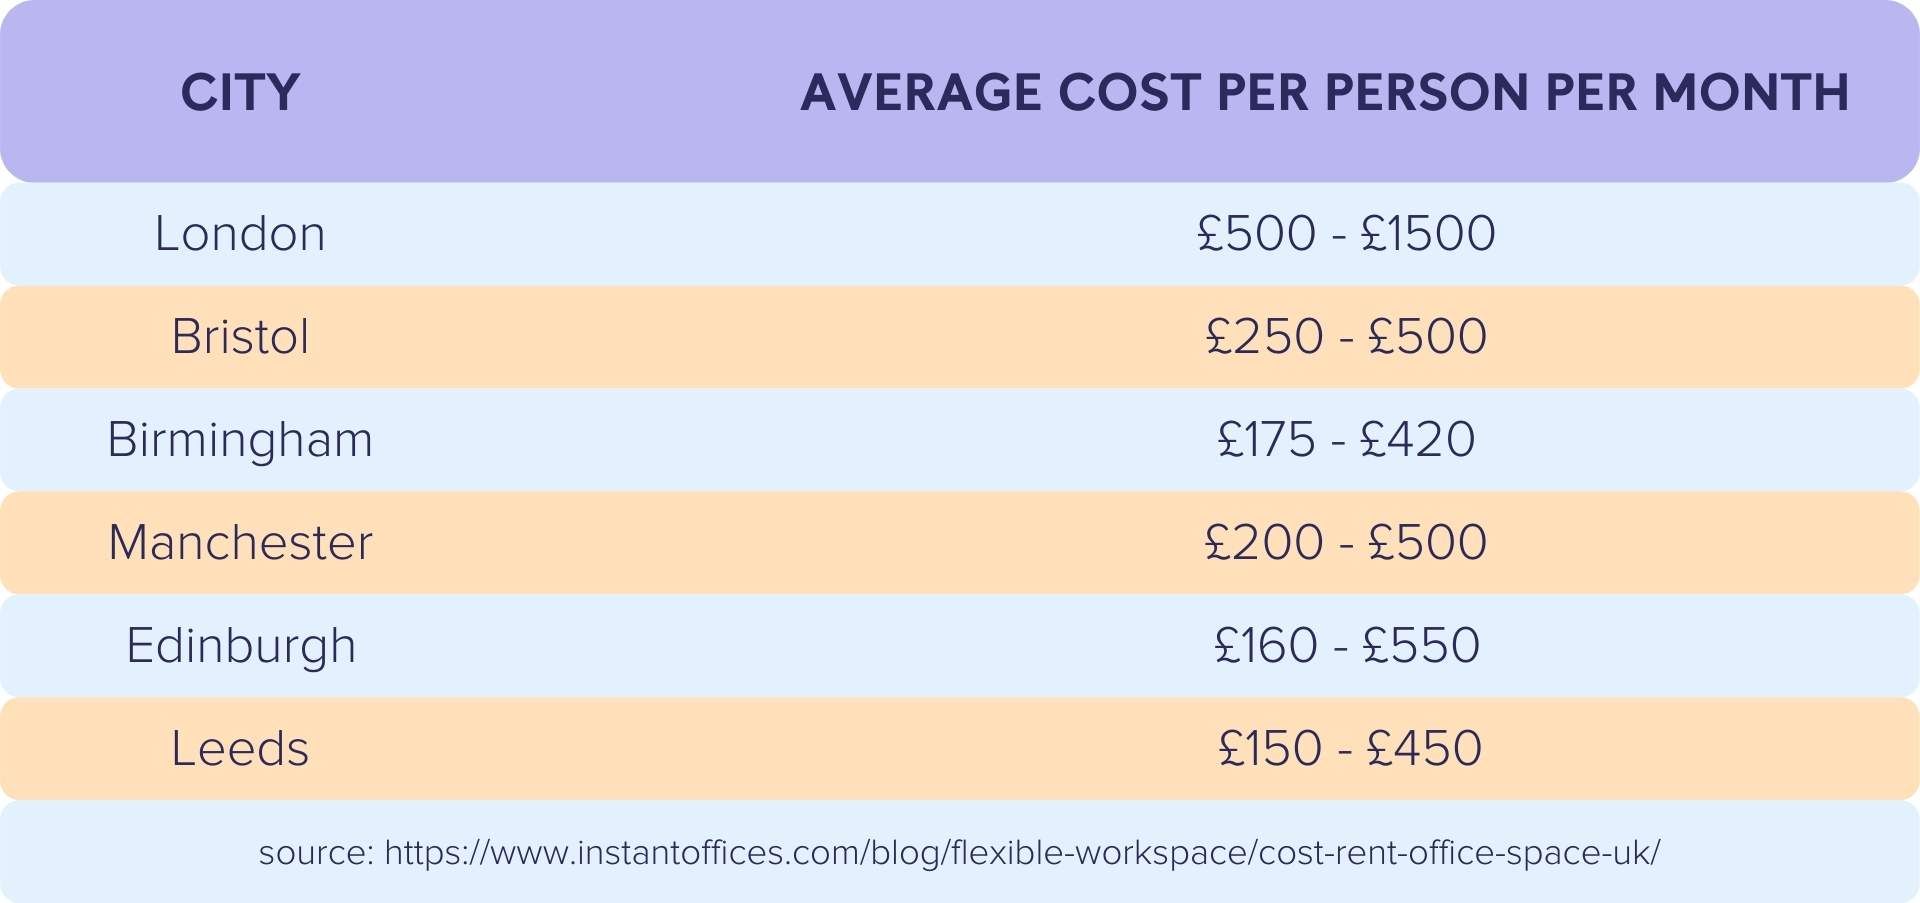 Average cost per person